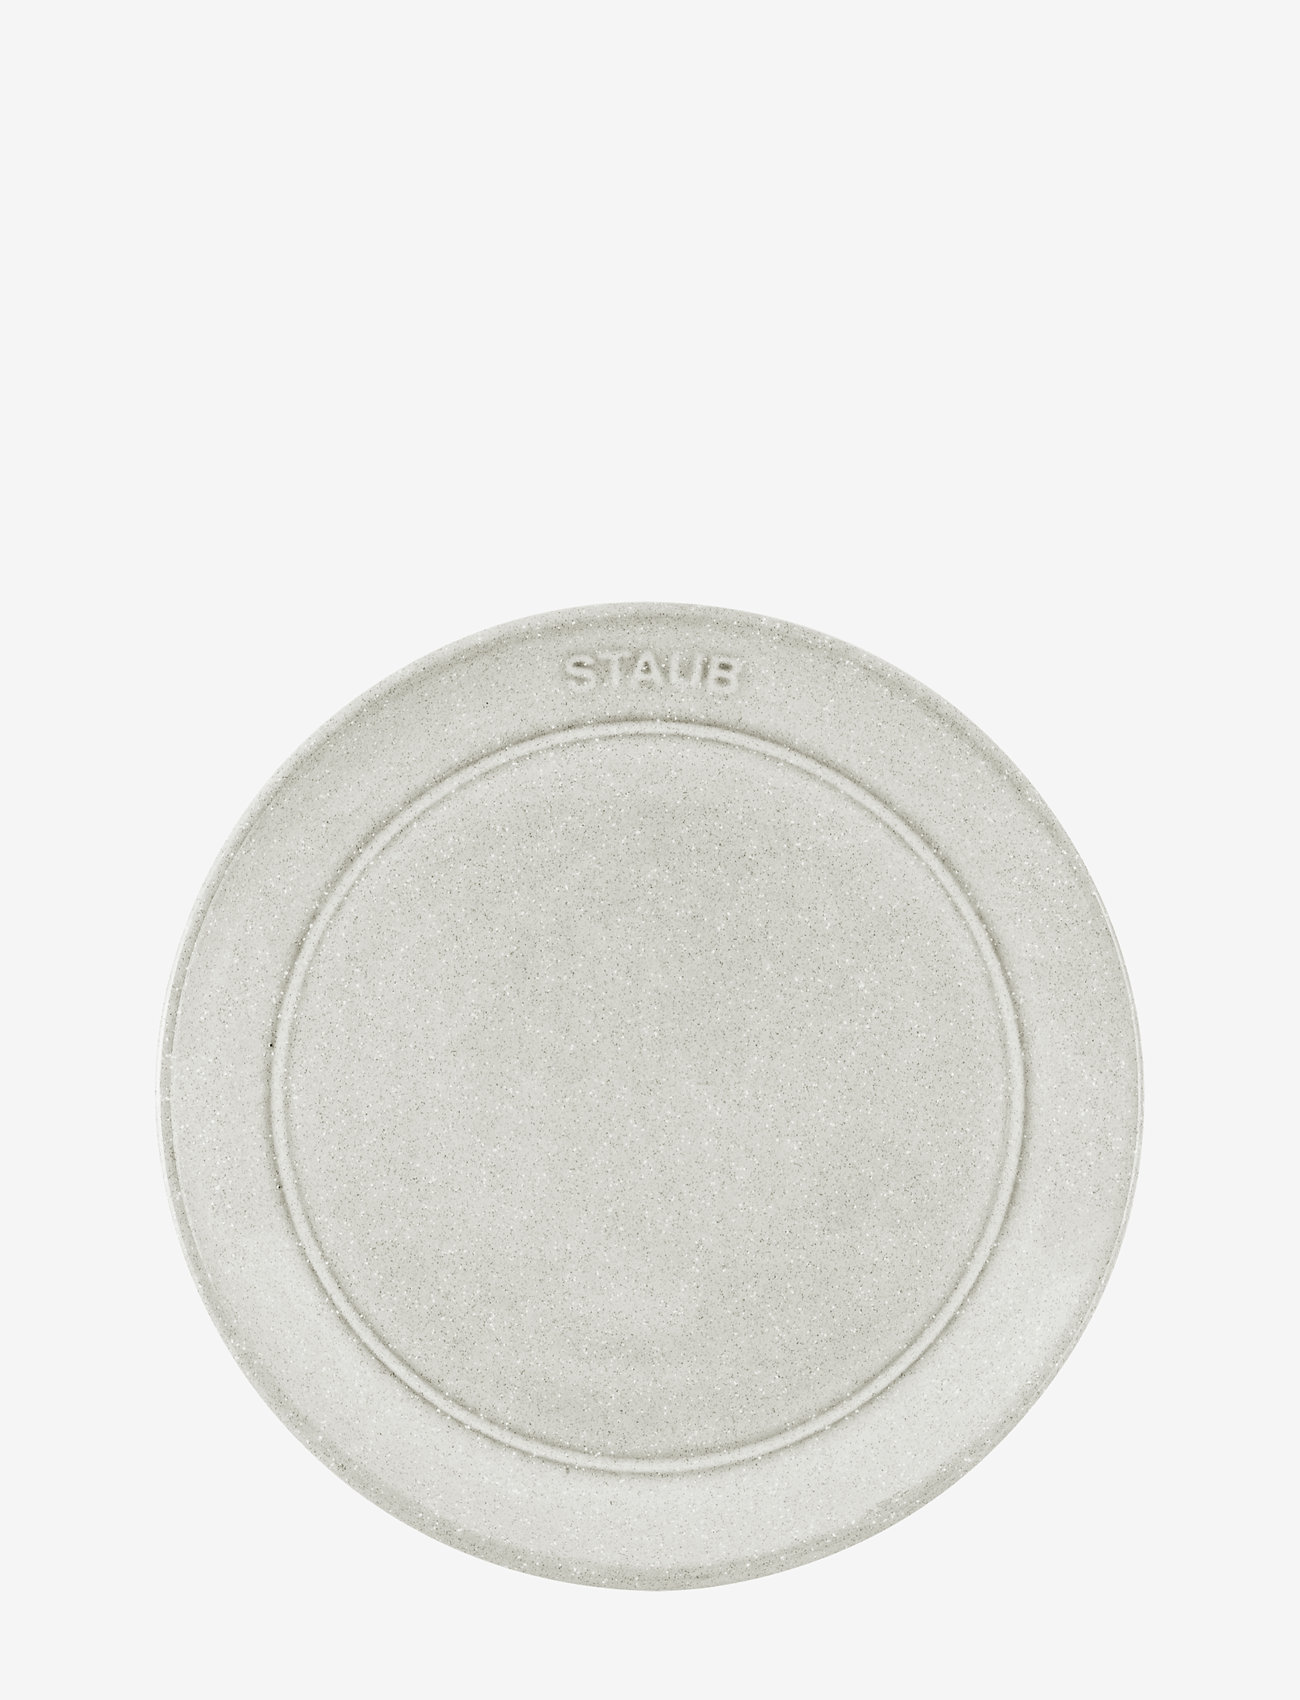 STAUB - Flat tallerken 15 cm, Hvit trøffel - de laveste prisene - grey - 1